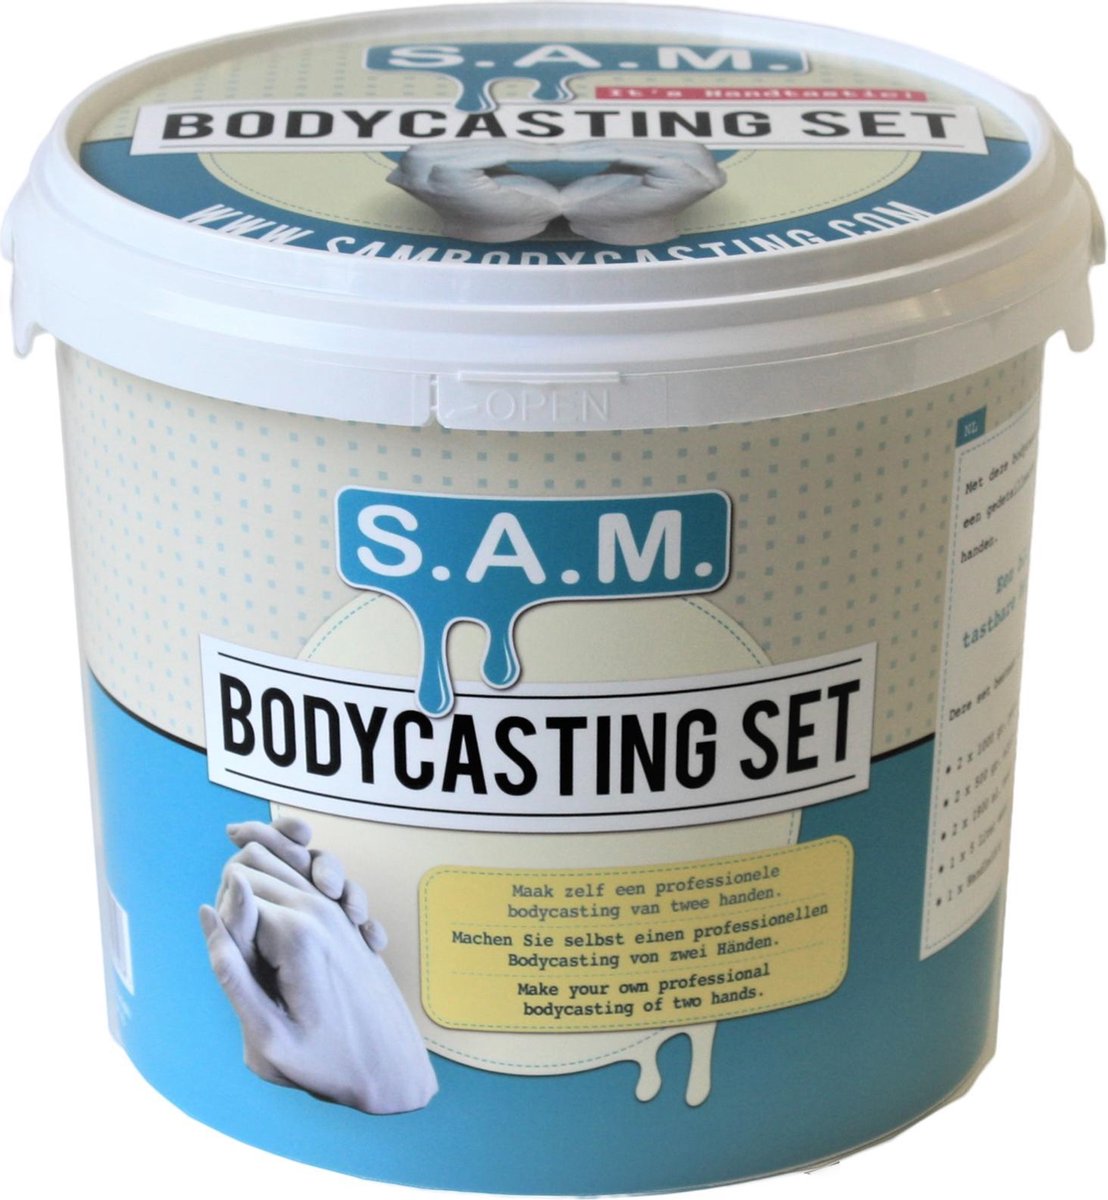 SAM Bodycasting Set |1 kg vormpoeder en 2 kg Gips | De enige echte | Voor het afvormen van 2 volwassen handen | Complete set | Bekend van televisie | De beste kwaliteit gips en Gel - SAM Bodycasting Set